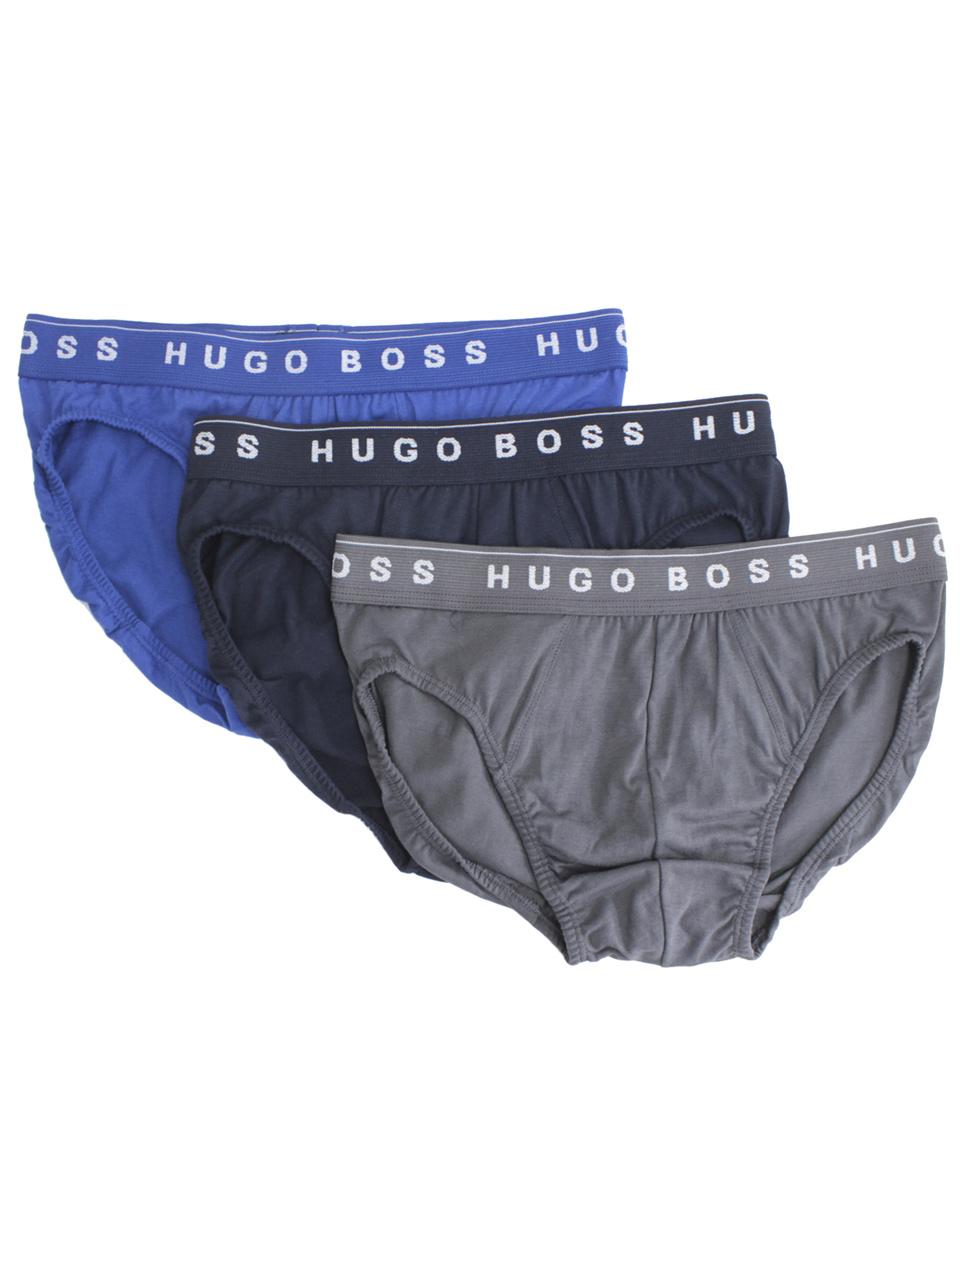 Hugo Boss Men's 3-Pairs Stretch Cotton Mini Briefs Underwear